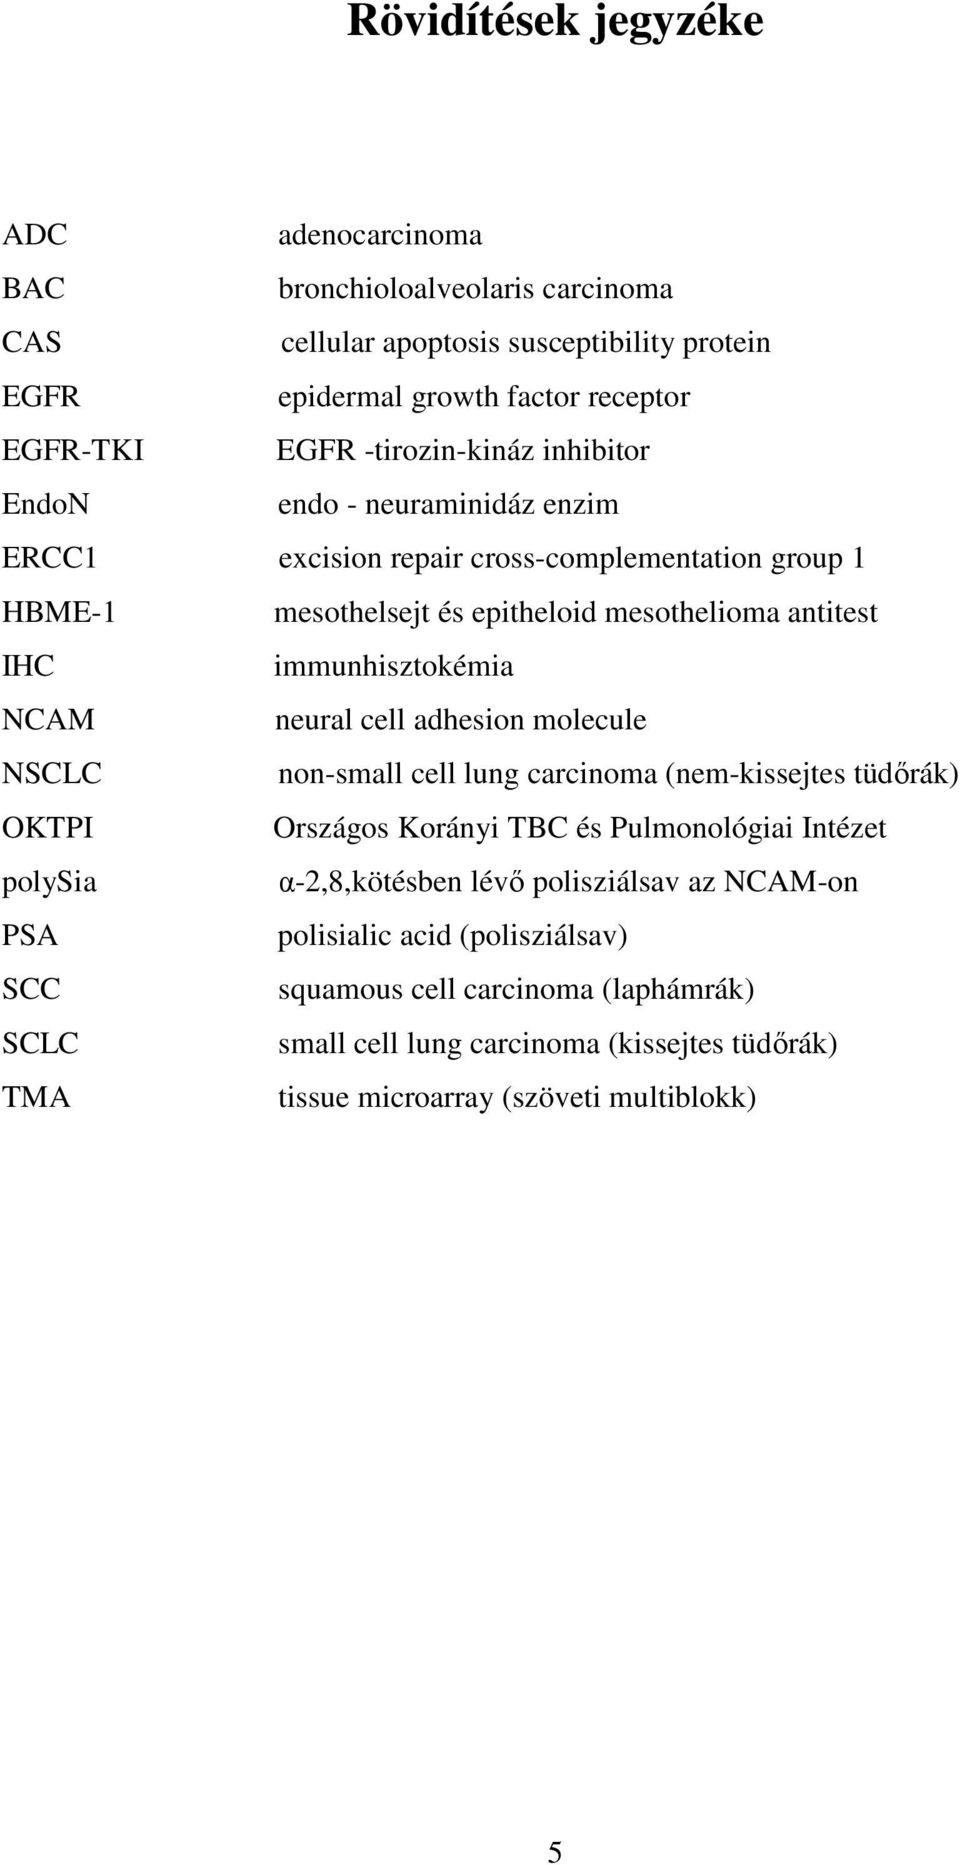 immunhisztokémia NCAM neural cell adhesion molecule NSCLC non-small cell lung carcinoma (nem-kissejtes tüdırák) OKTPI Országos Korányi TBC és Pulmonológiai Intézet polysia